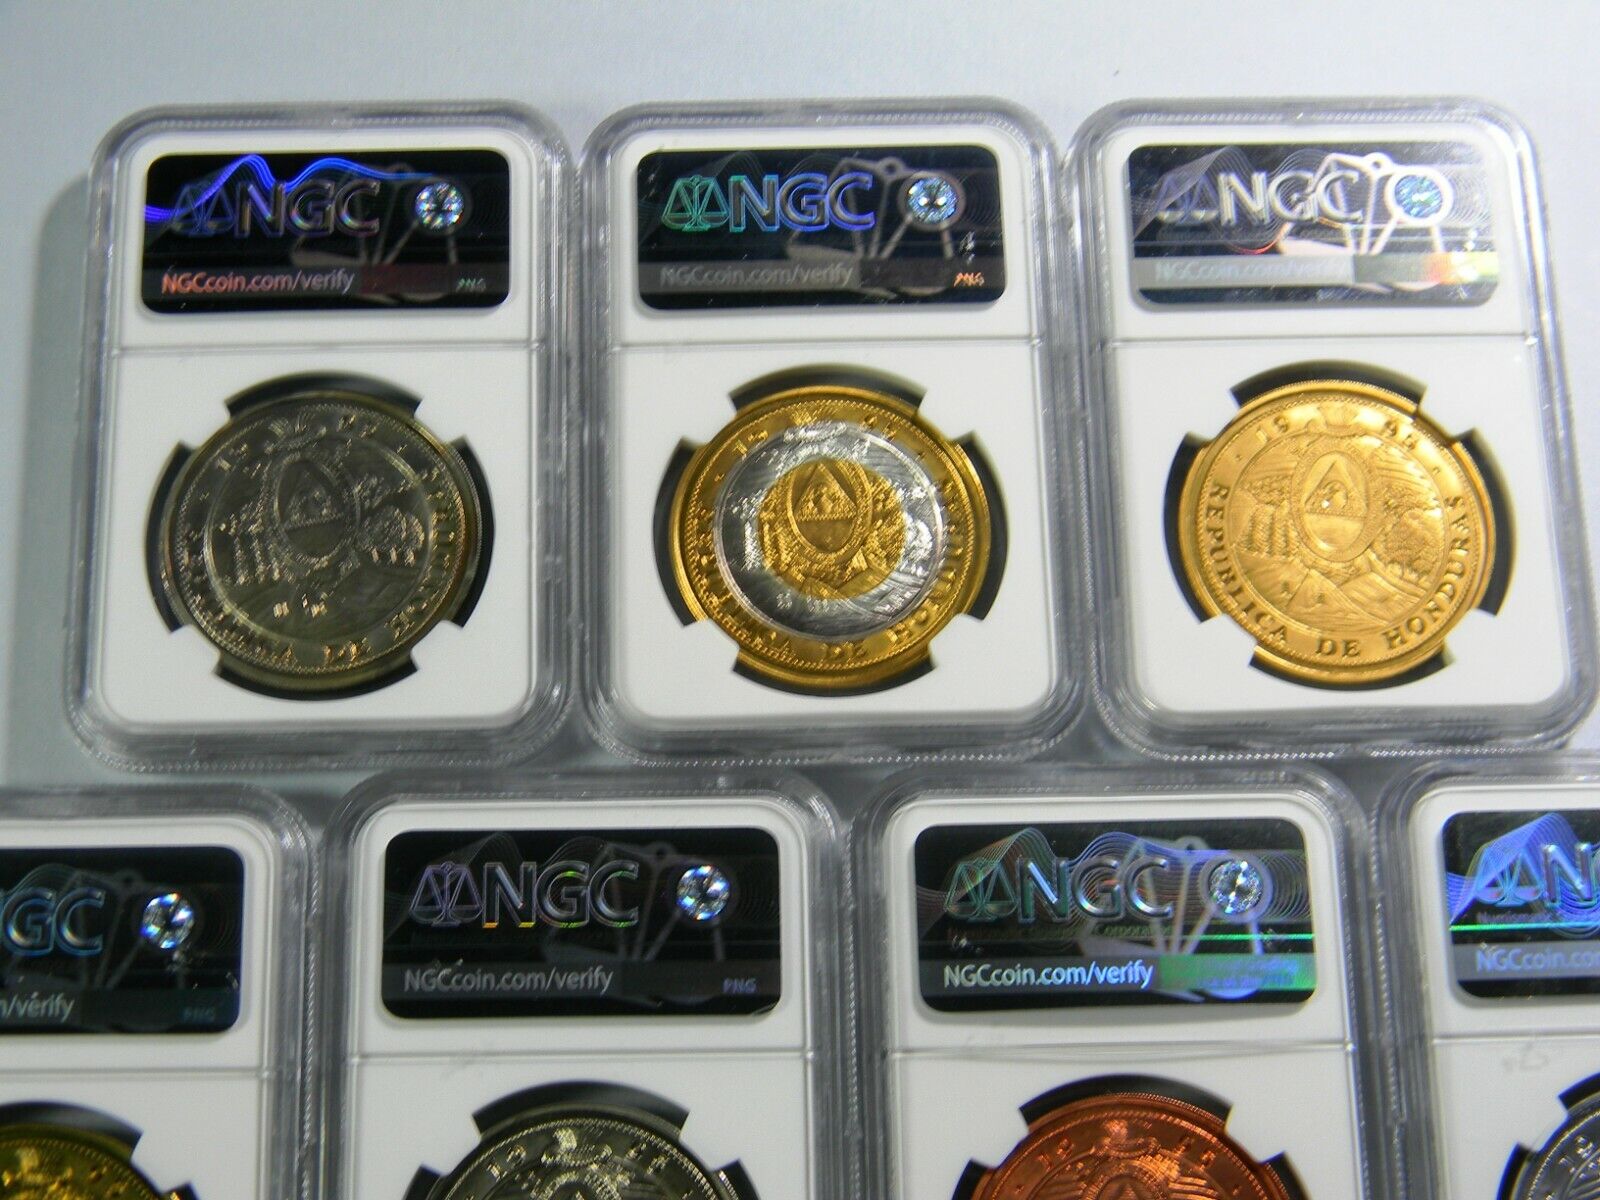 1995 Honduras 10 Lempiras 7 coin Lot NGC Certified  Без бренда - фотография #6